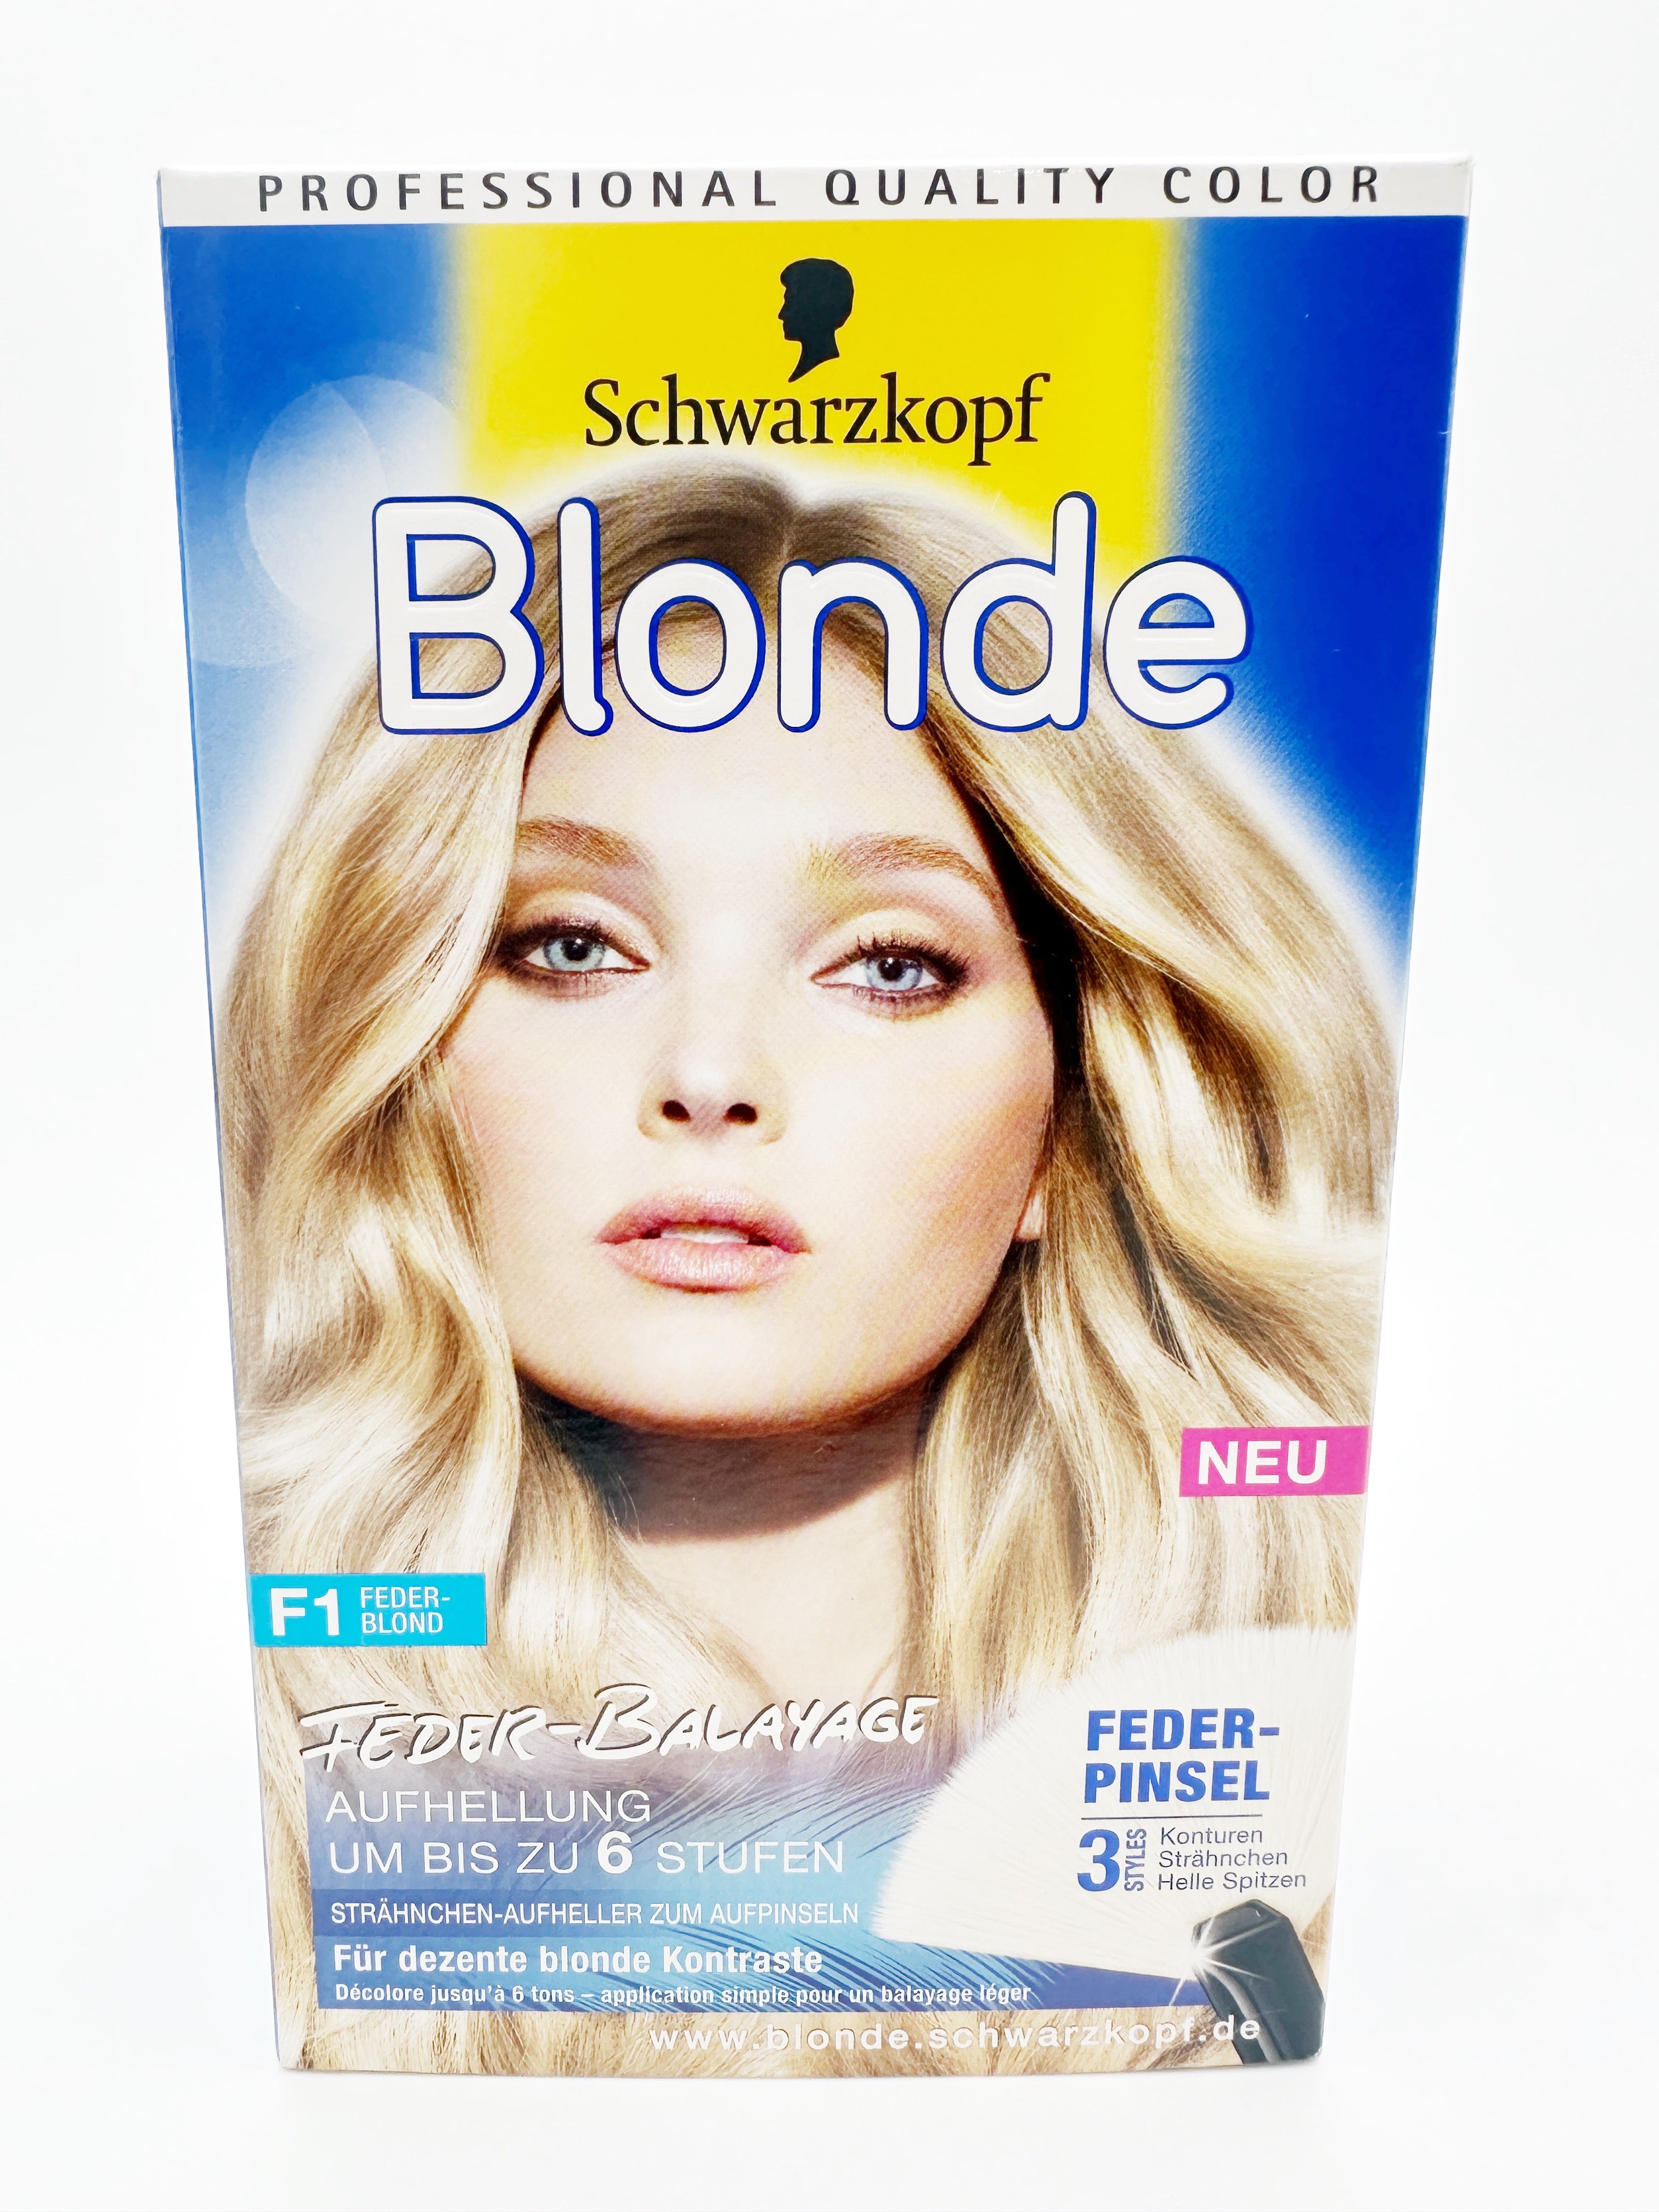 Schwarzkopf Blonde F1 Feder-Blond